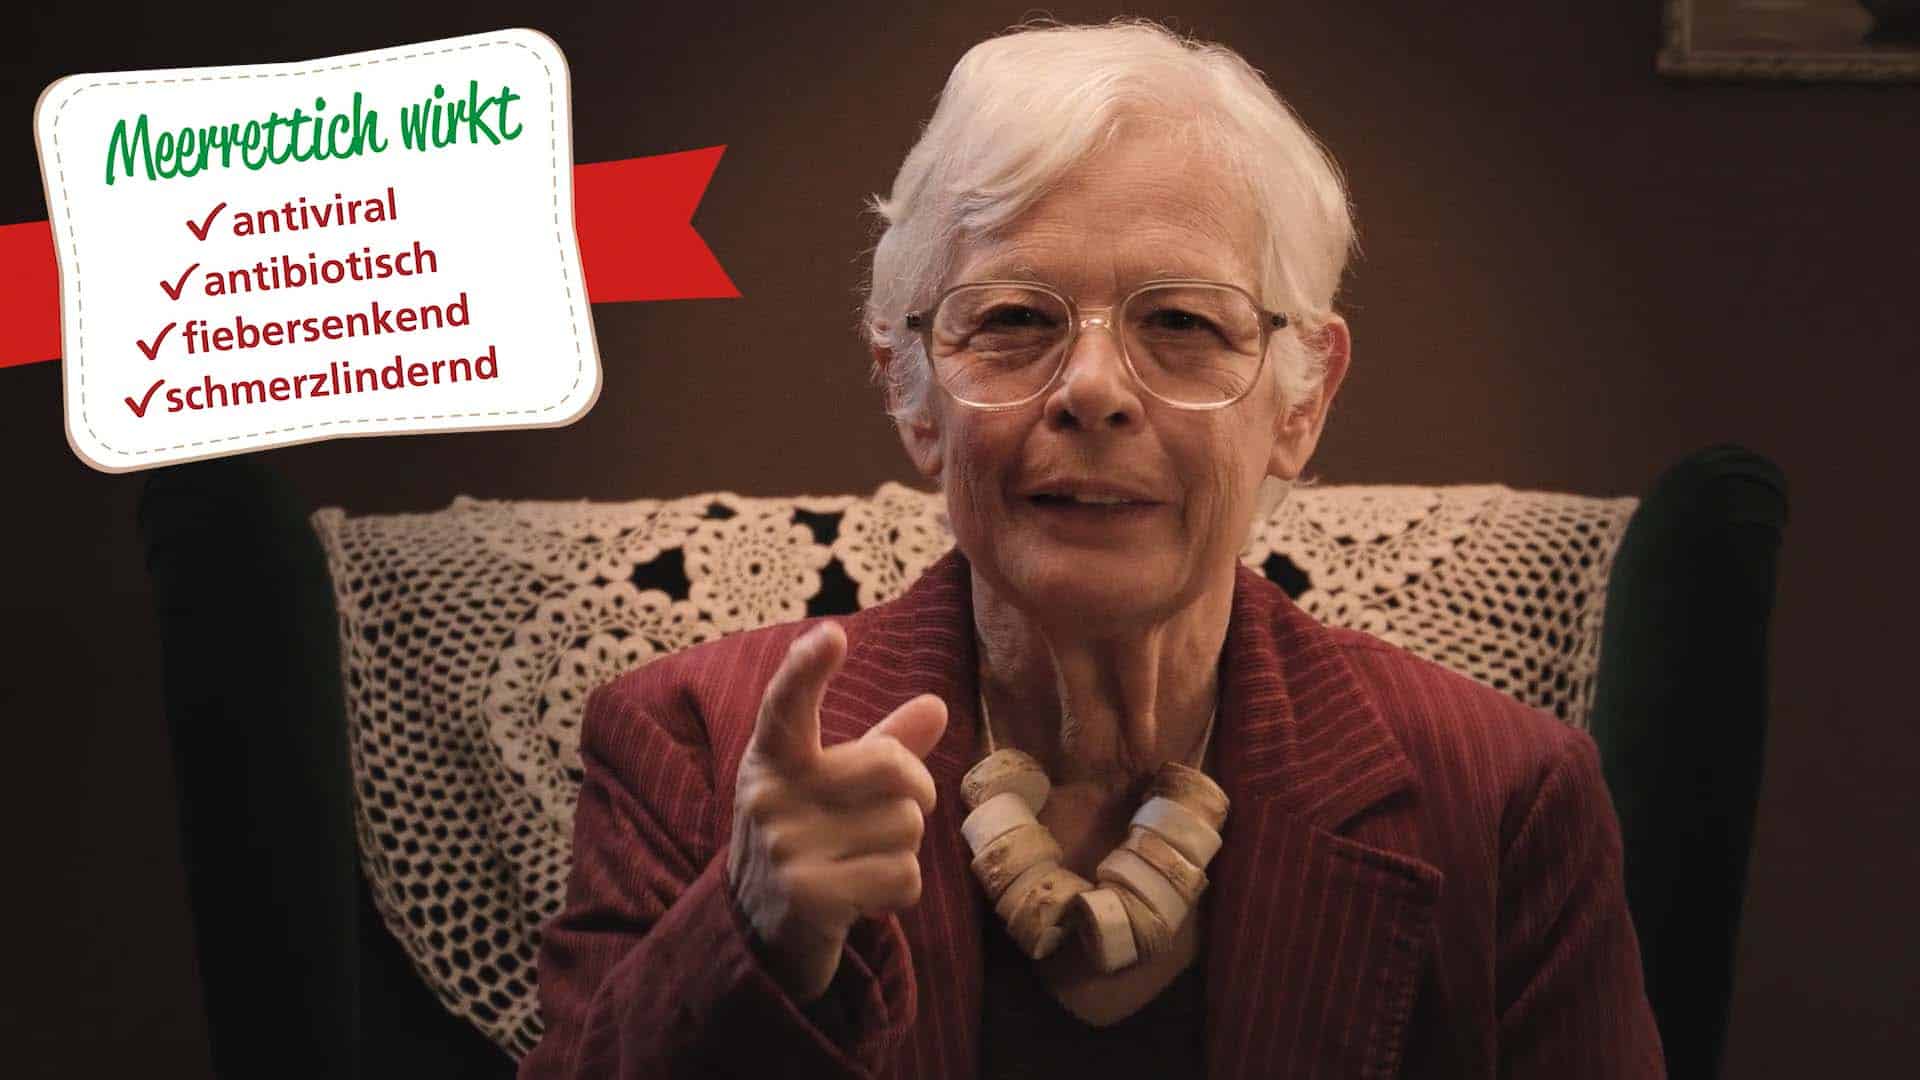 AOK Baden-Württemberg Adventskalender Filmreihe - Ältere Darstellerin spricht über Meerrettich Vorteile - Filmproduktion hawkins.film